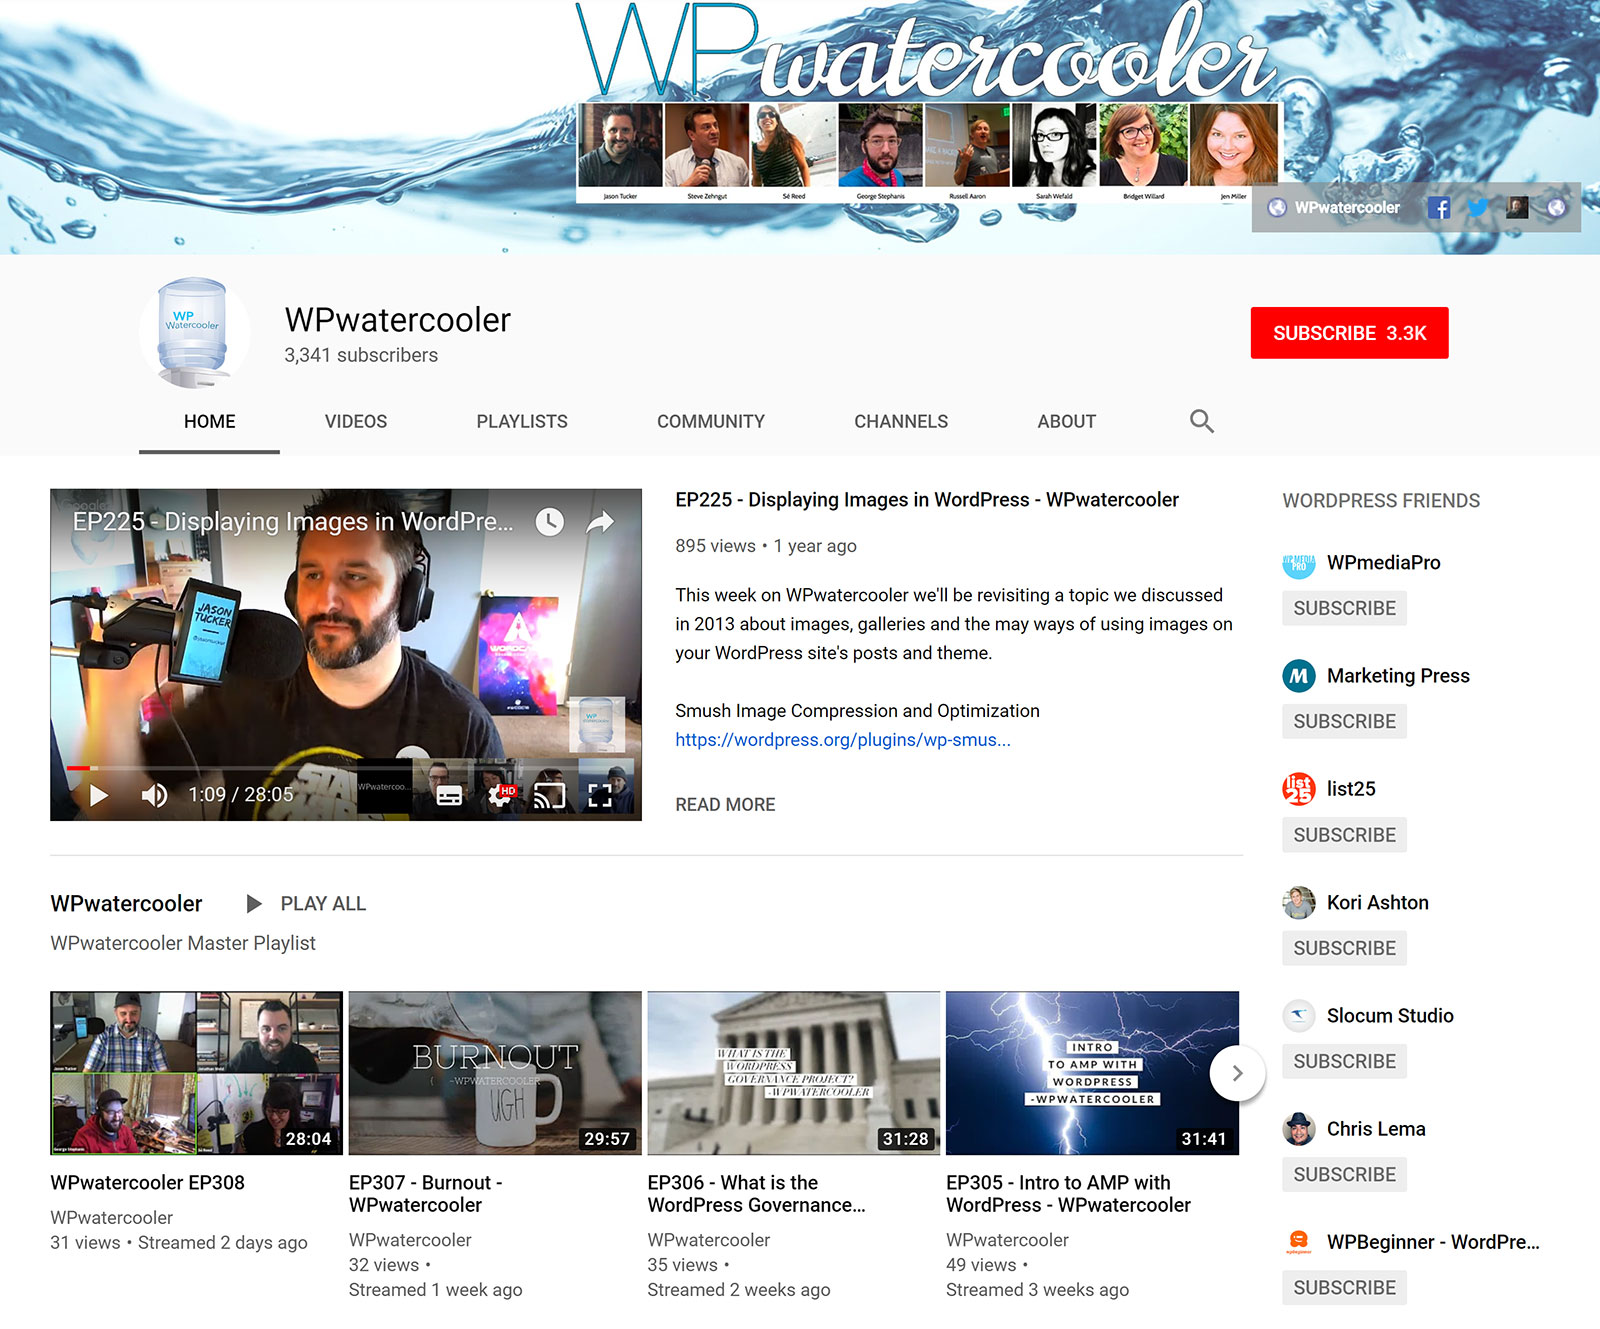 WPwatercooler - YouTube Channel